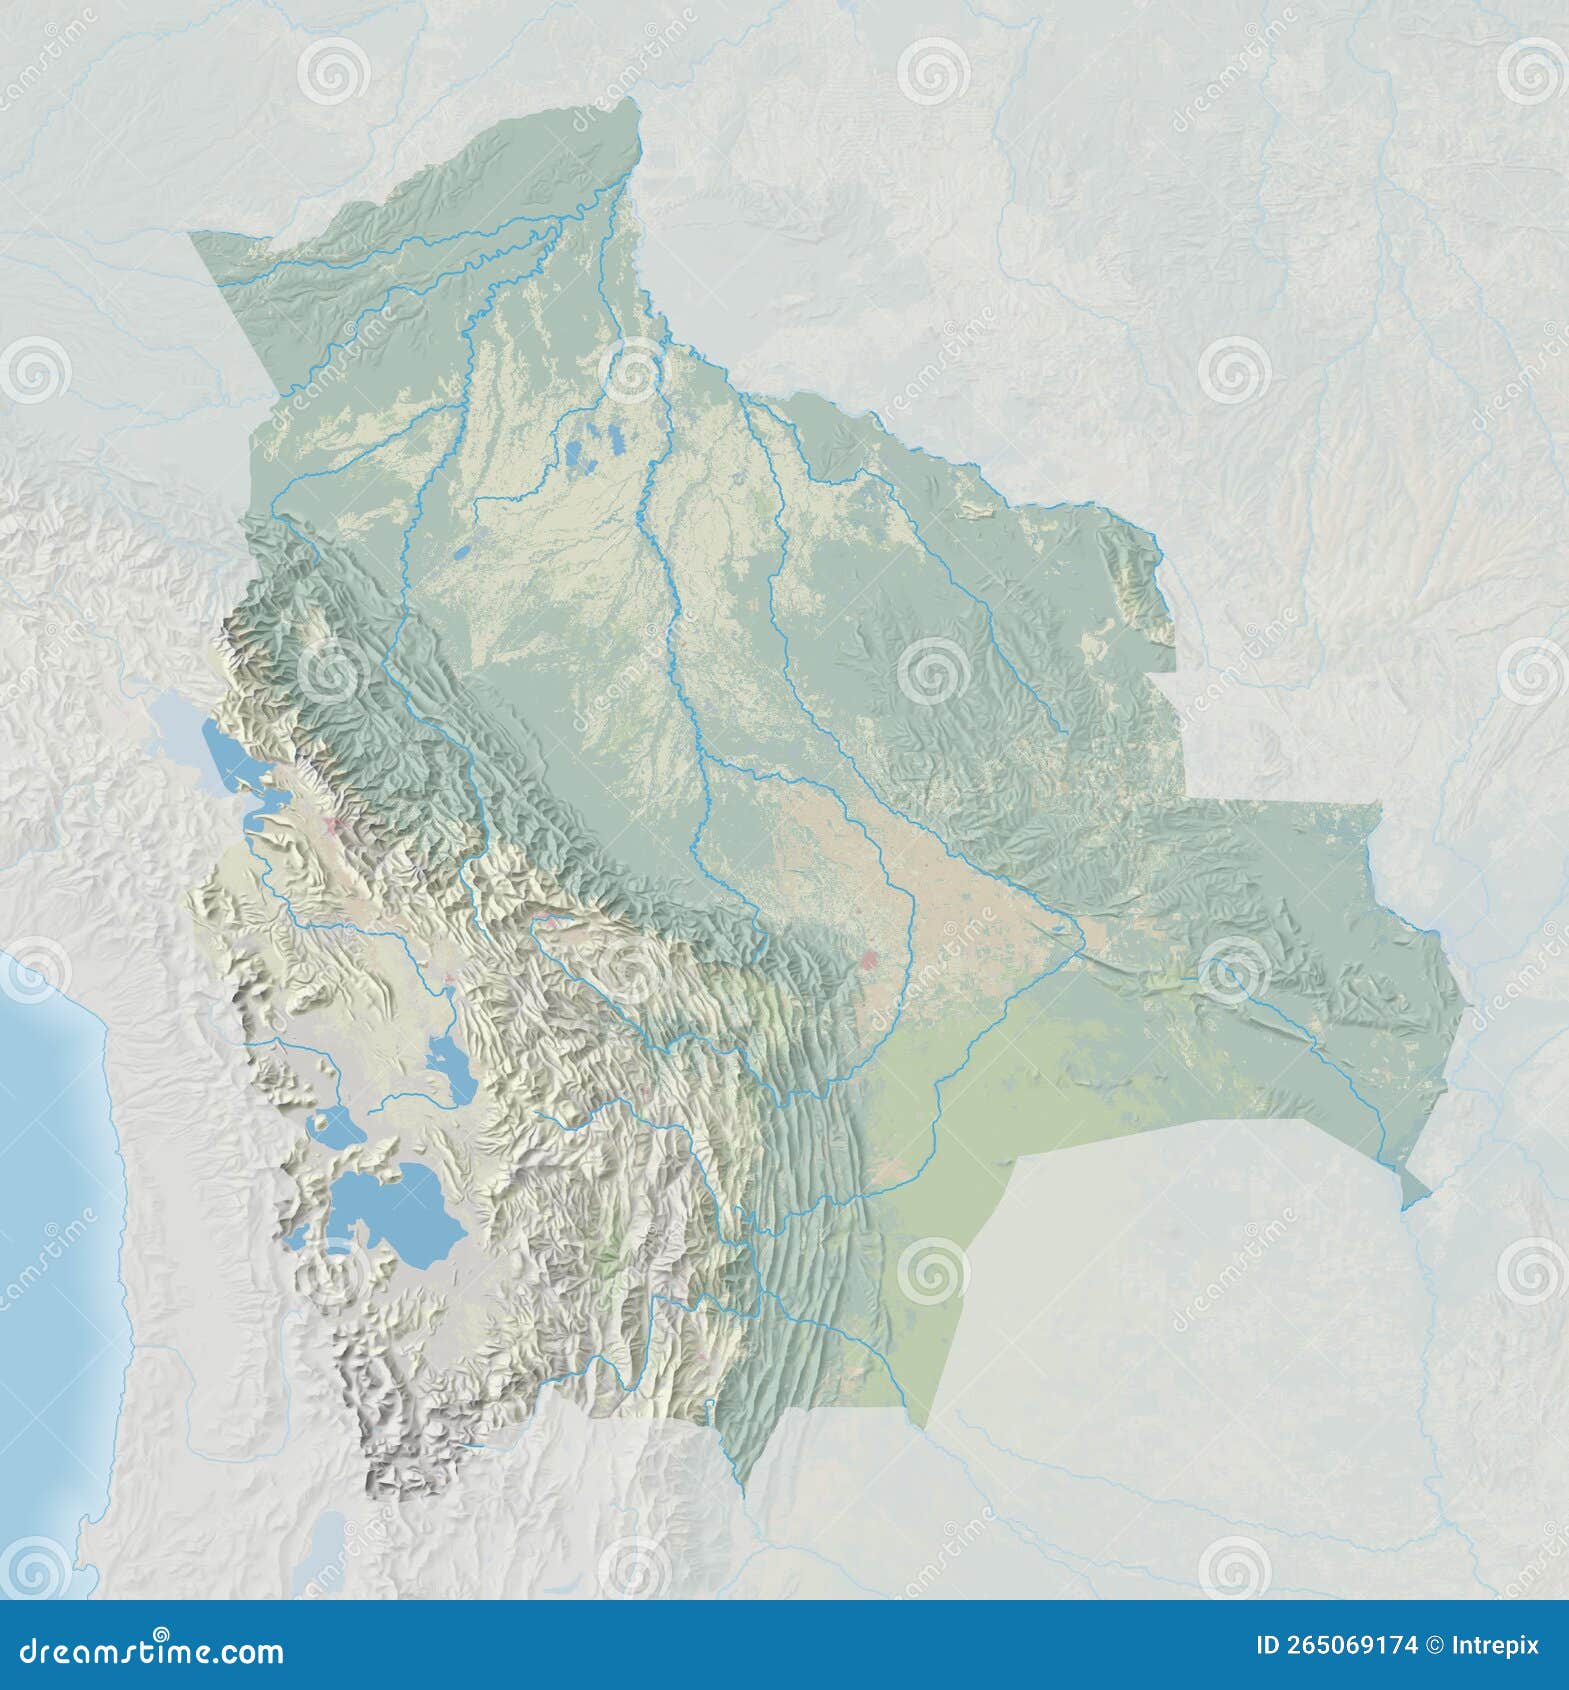 Topographic Map Of Bolivia Stock Photography | CartoonDealer.com #265069112